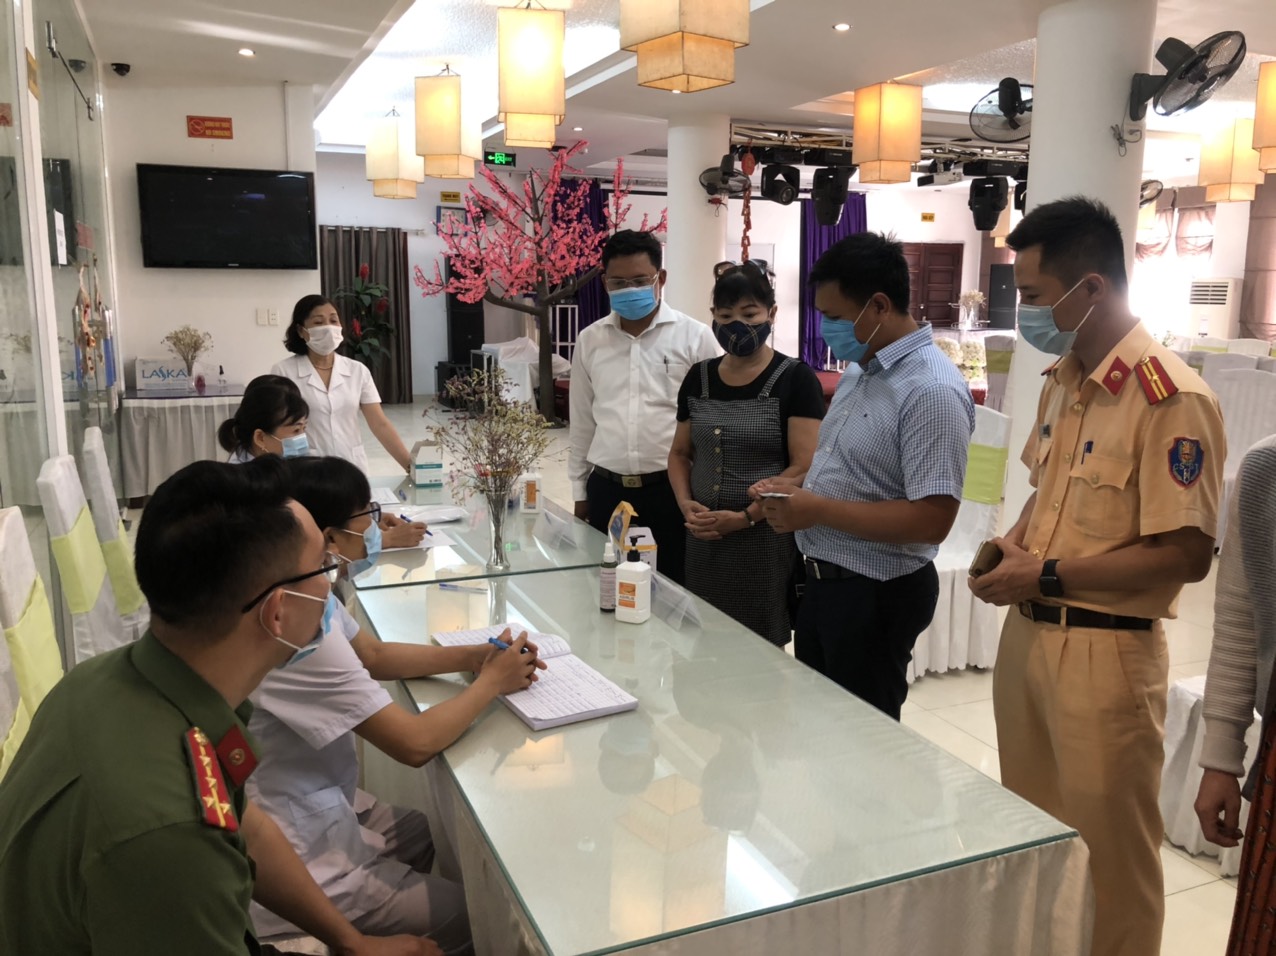 UBND huyện An Dương kiểm tra khu vực cách ly tại khách sạn Bình Minh Trường Sơn, xã An Đồng 